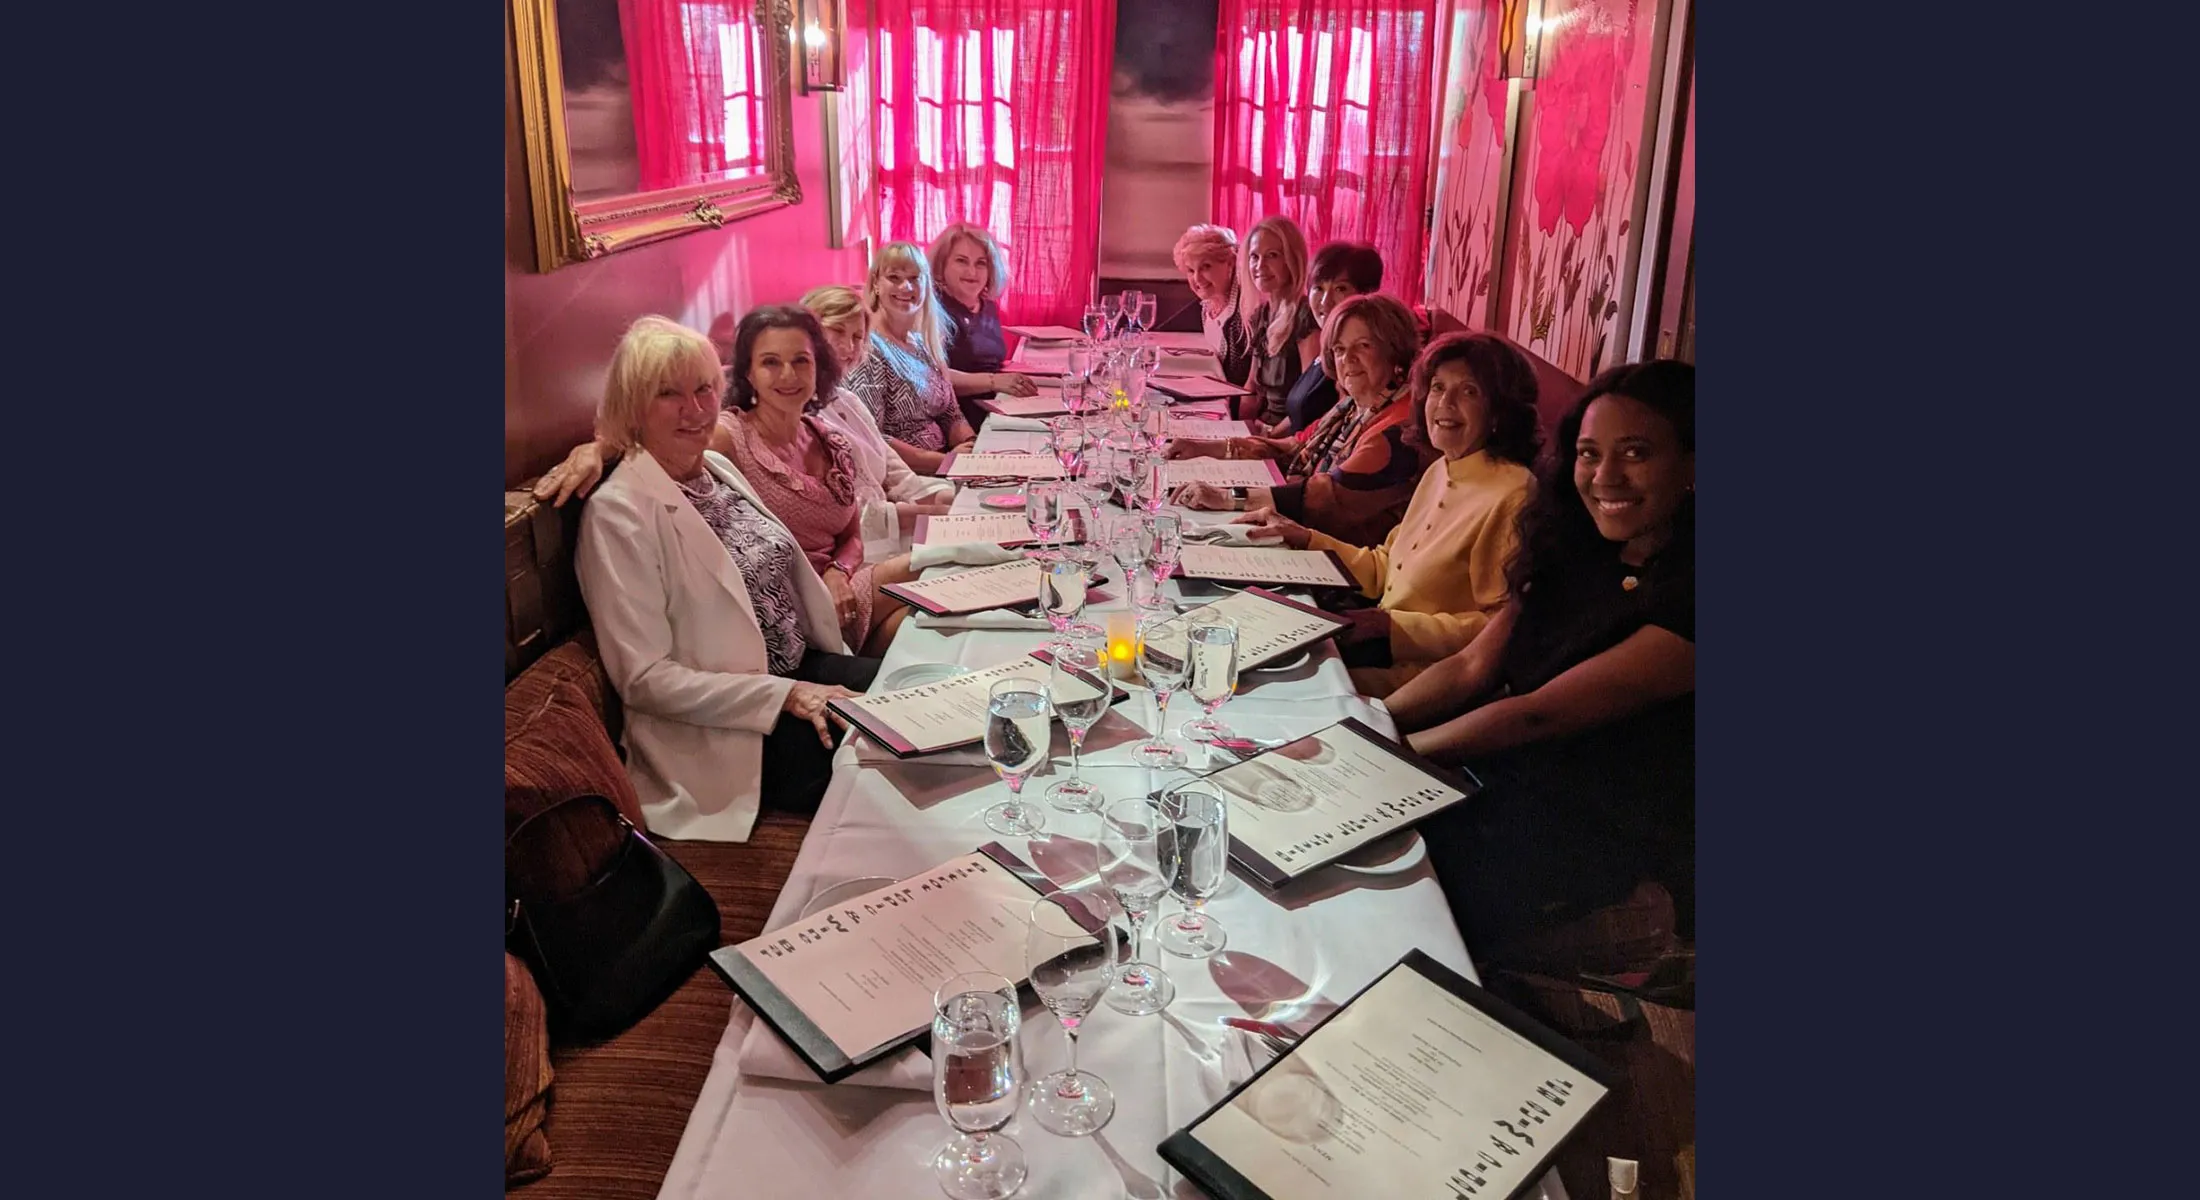 Dix membres du Réseau des femmes de CARE et le personnel de CARE se connectent autour d'un dîner.